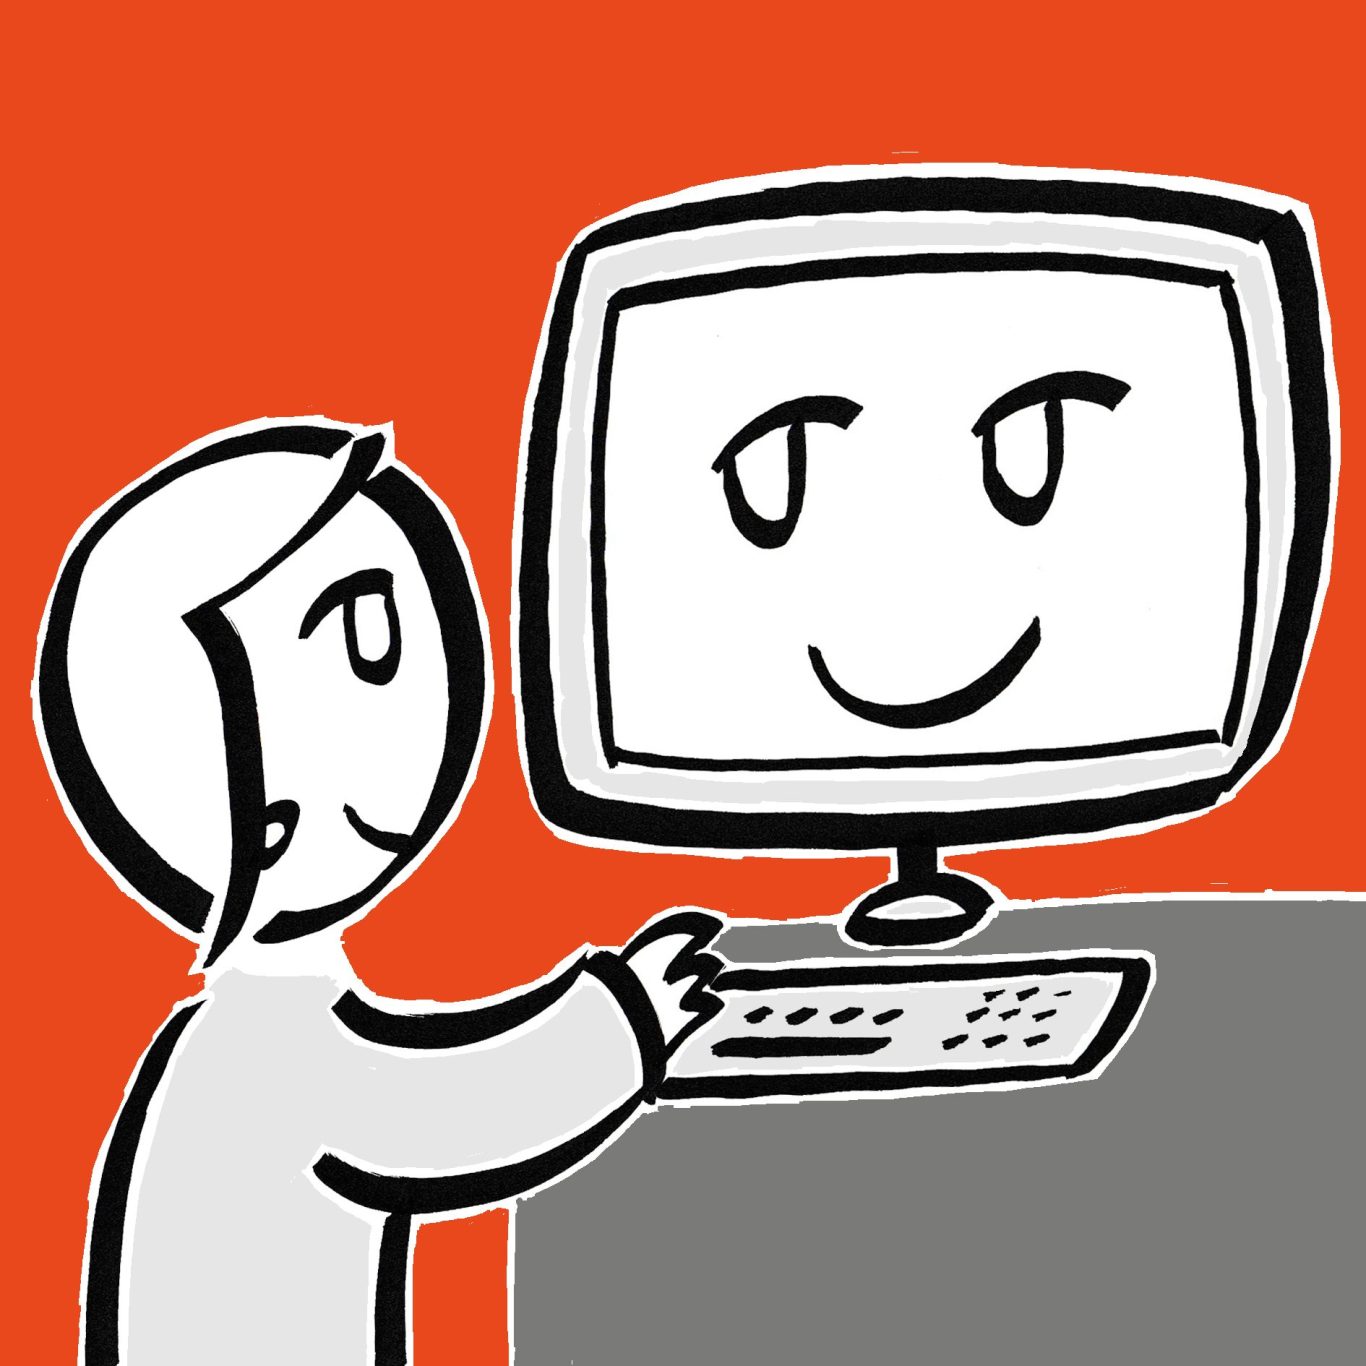 Piktogramm: Eine Figur steht an einem PC, der Bildschirm lächelt die Figur an.